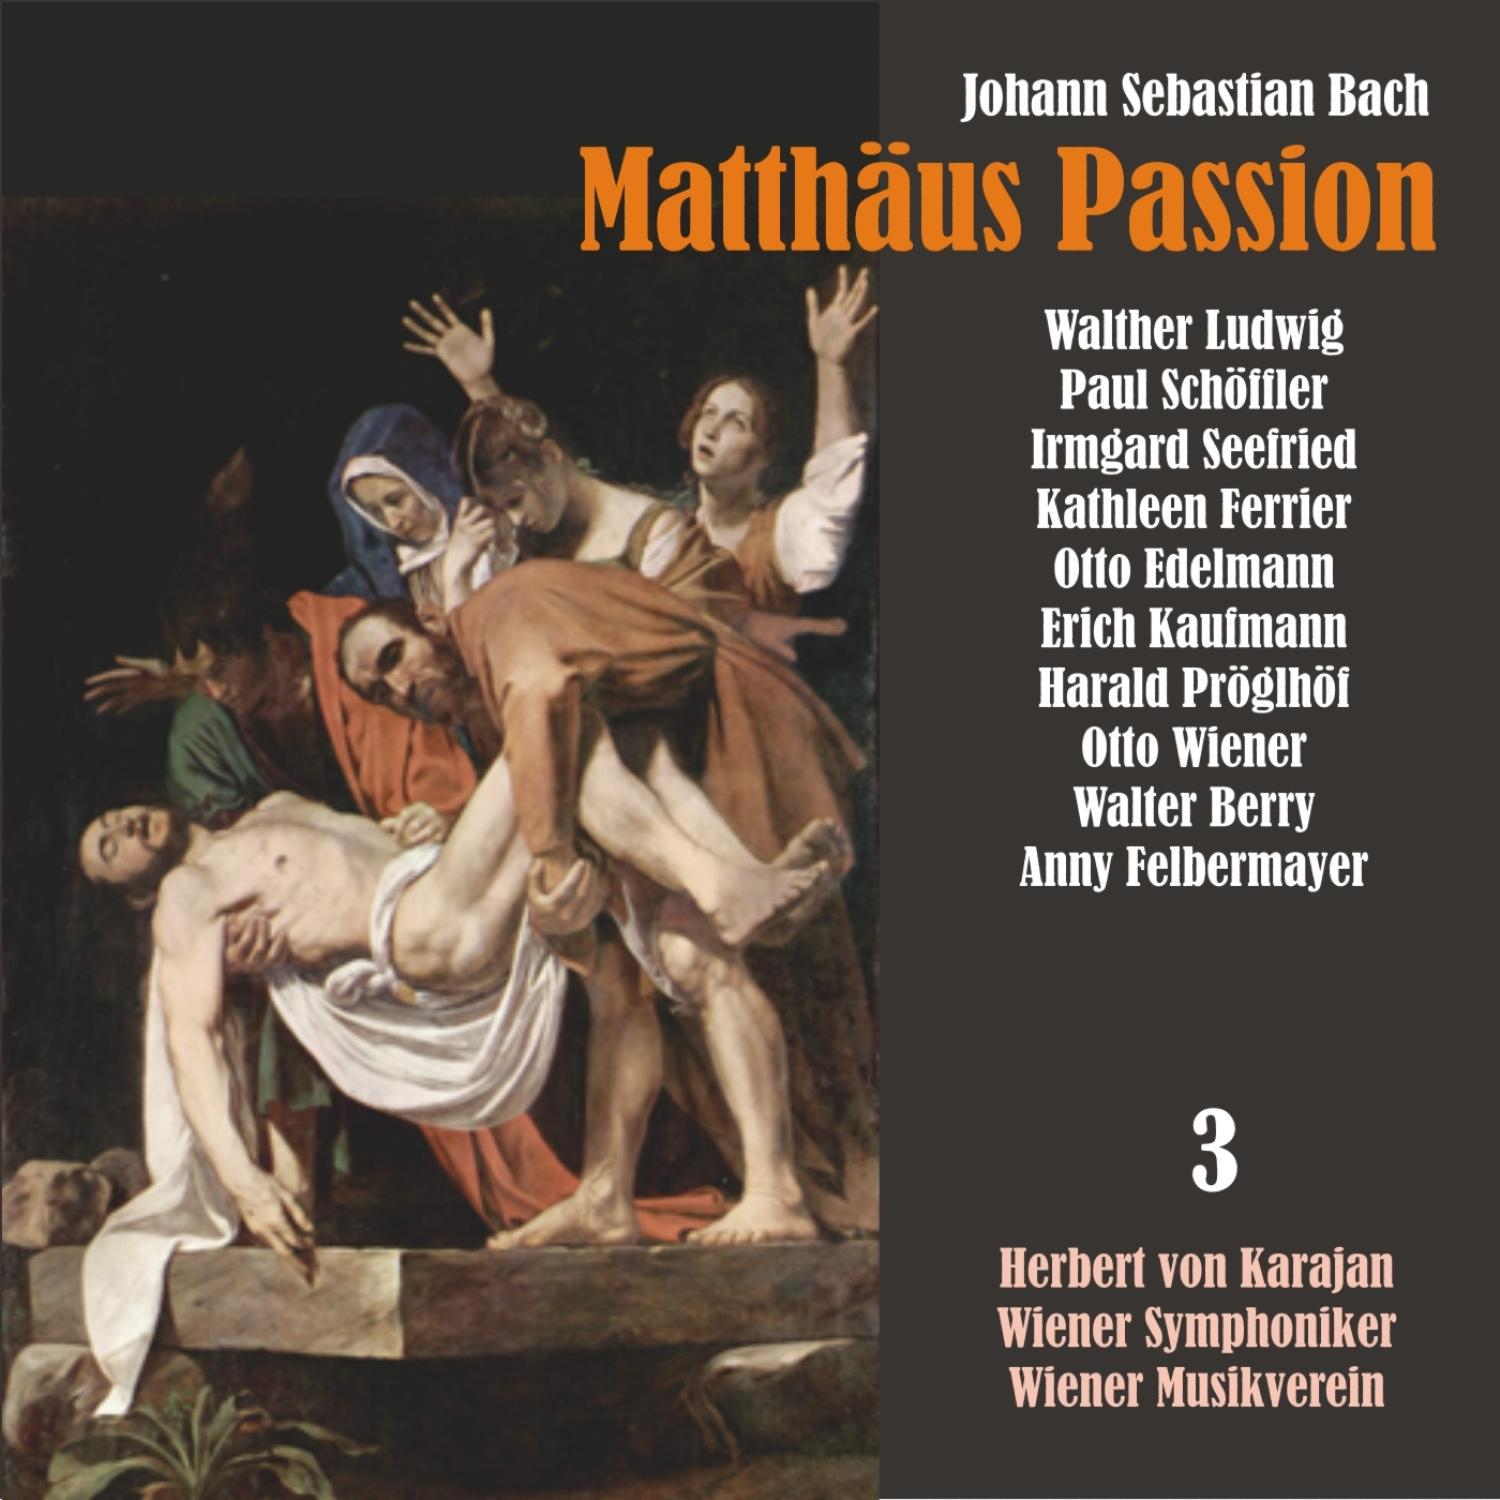 Matth us Passion, BWV 244: " Nun ist der Herr zur Ruh gebracht "